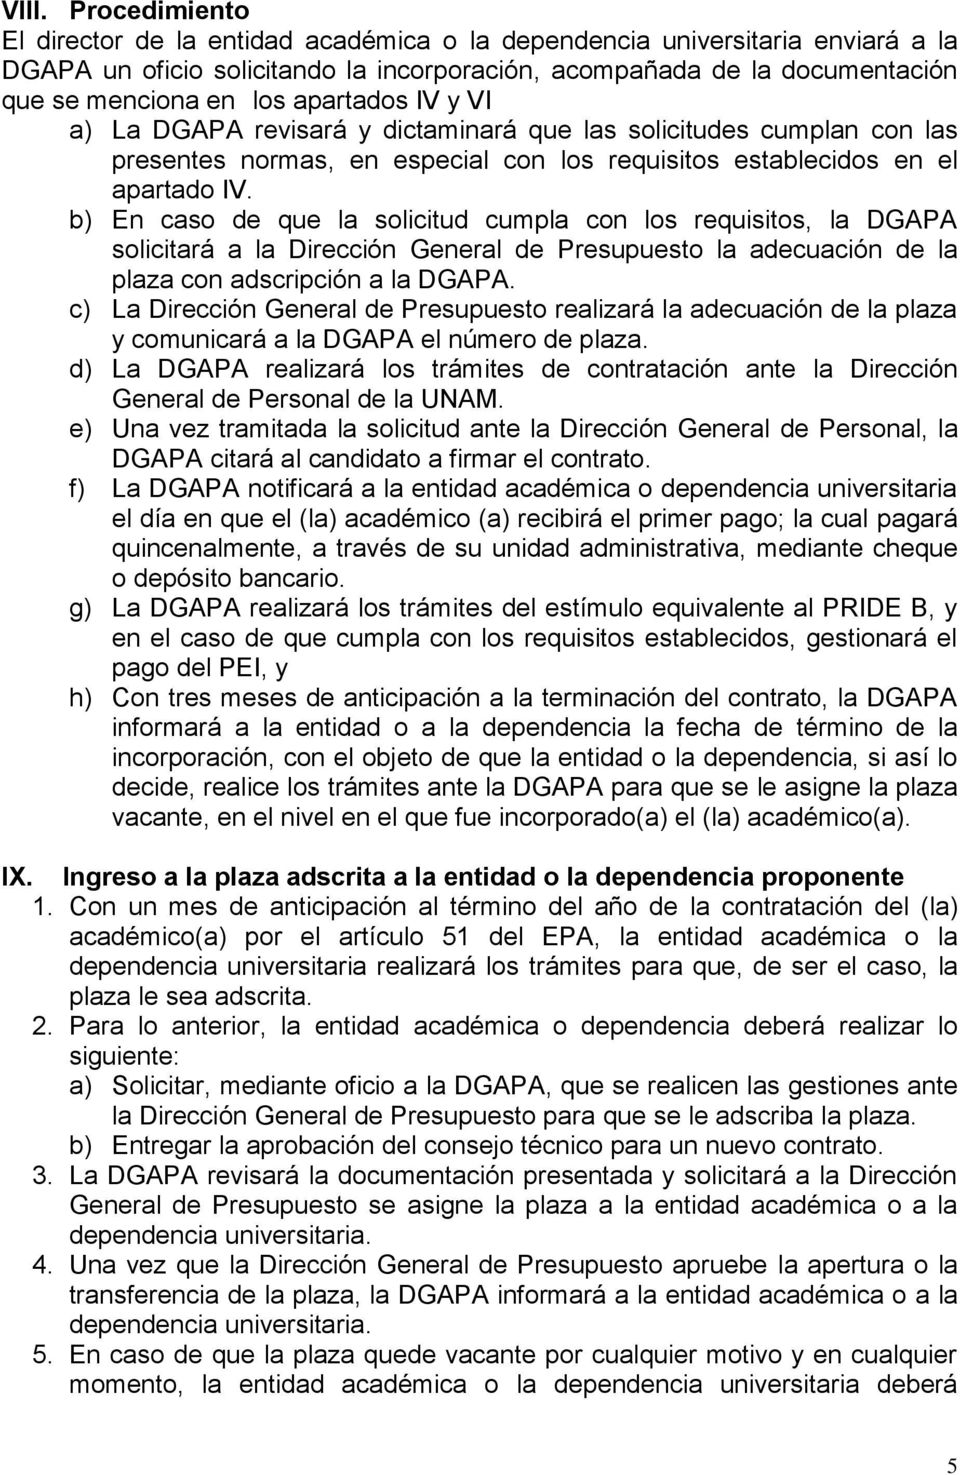 b) En caso de que la solicitud cumpla con los requisitos, la DGAPA solicitará a la Dirección General de Presupuesto la adecuación de la plaza con adscripción a la DGAPA.